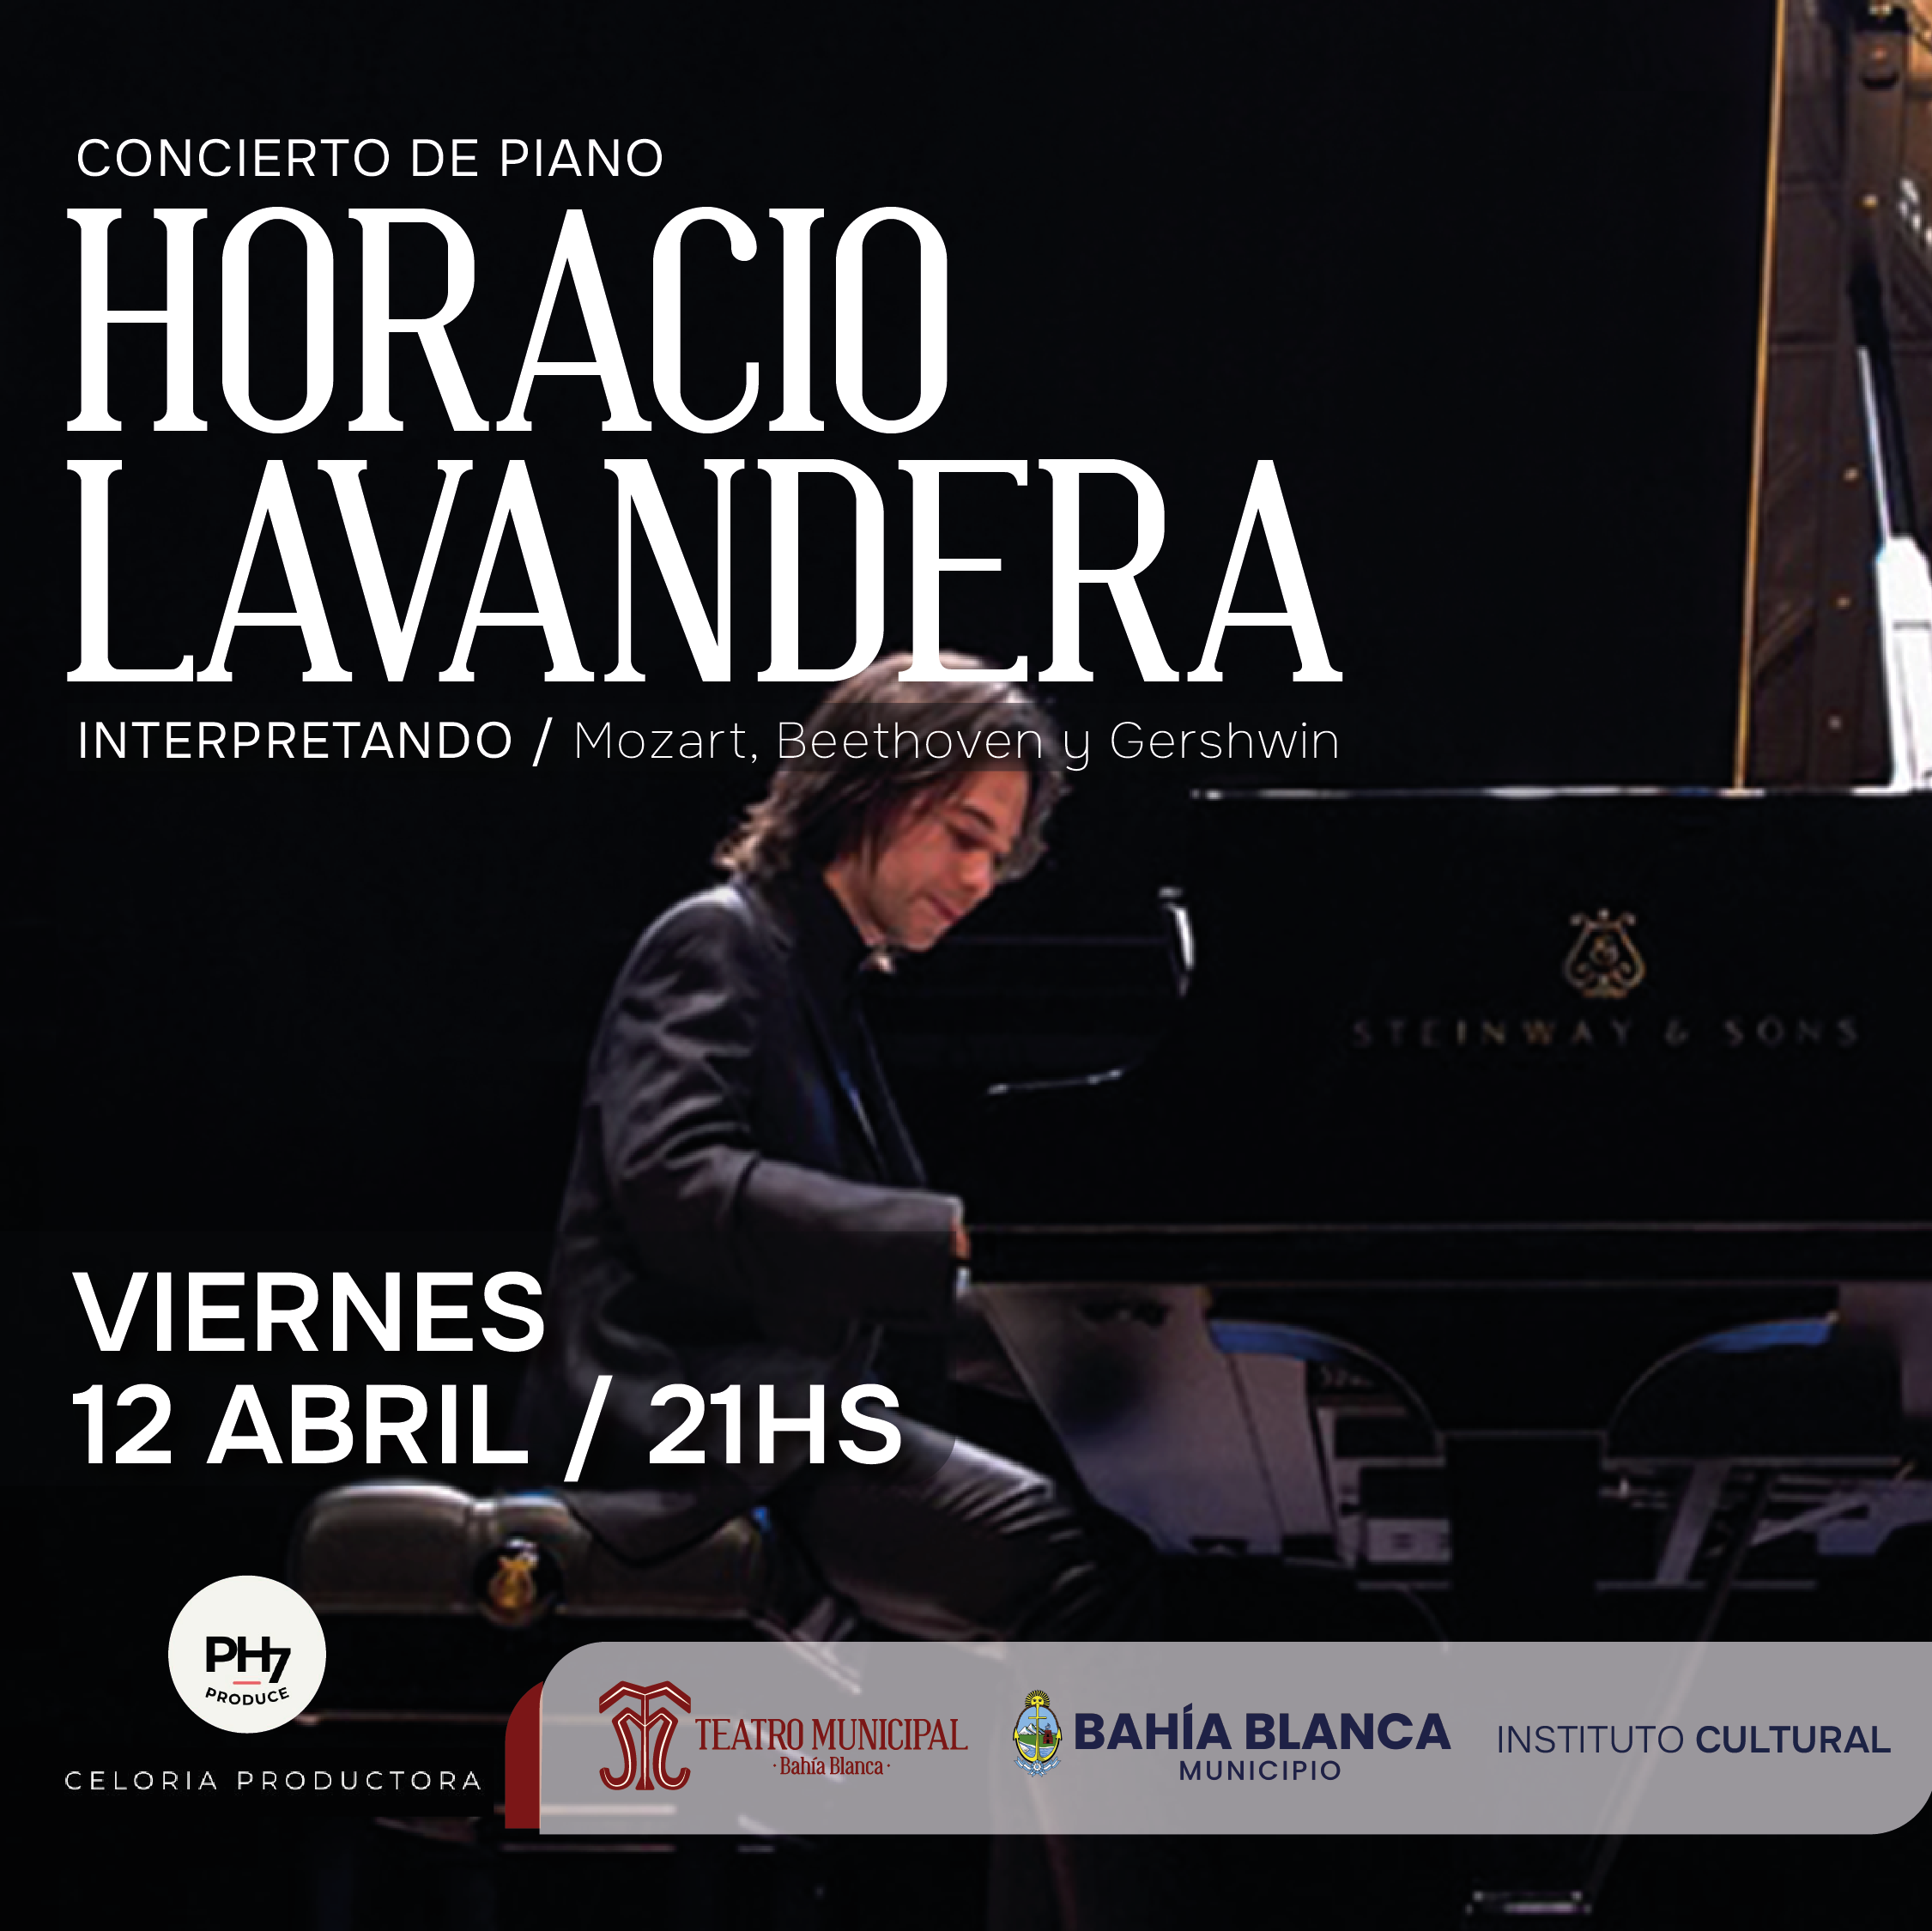 HORACIO LAVANDERA CONCIERTO DE PIANO